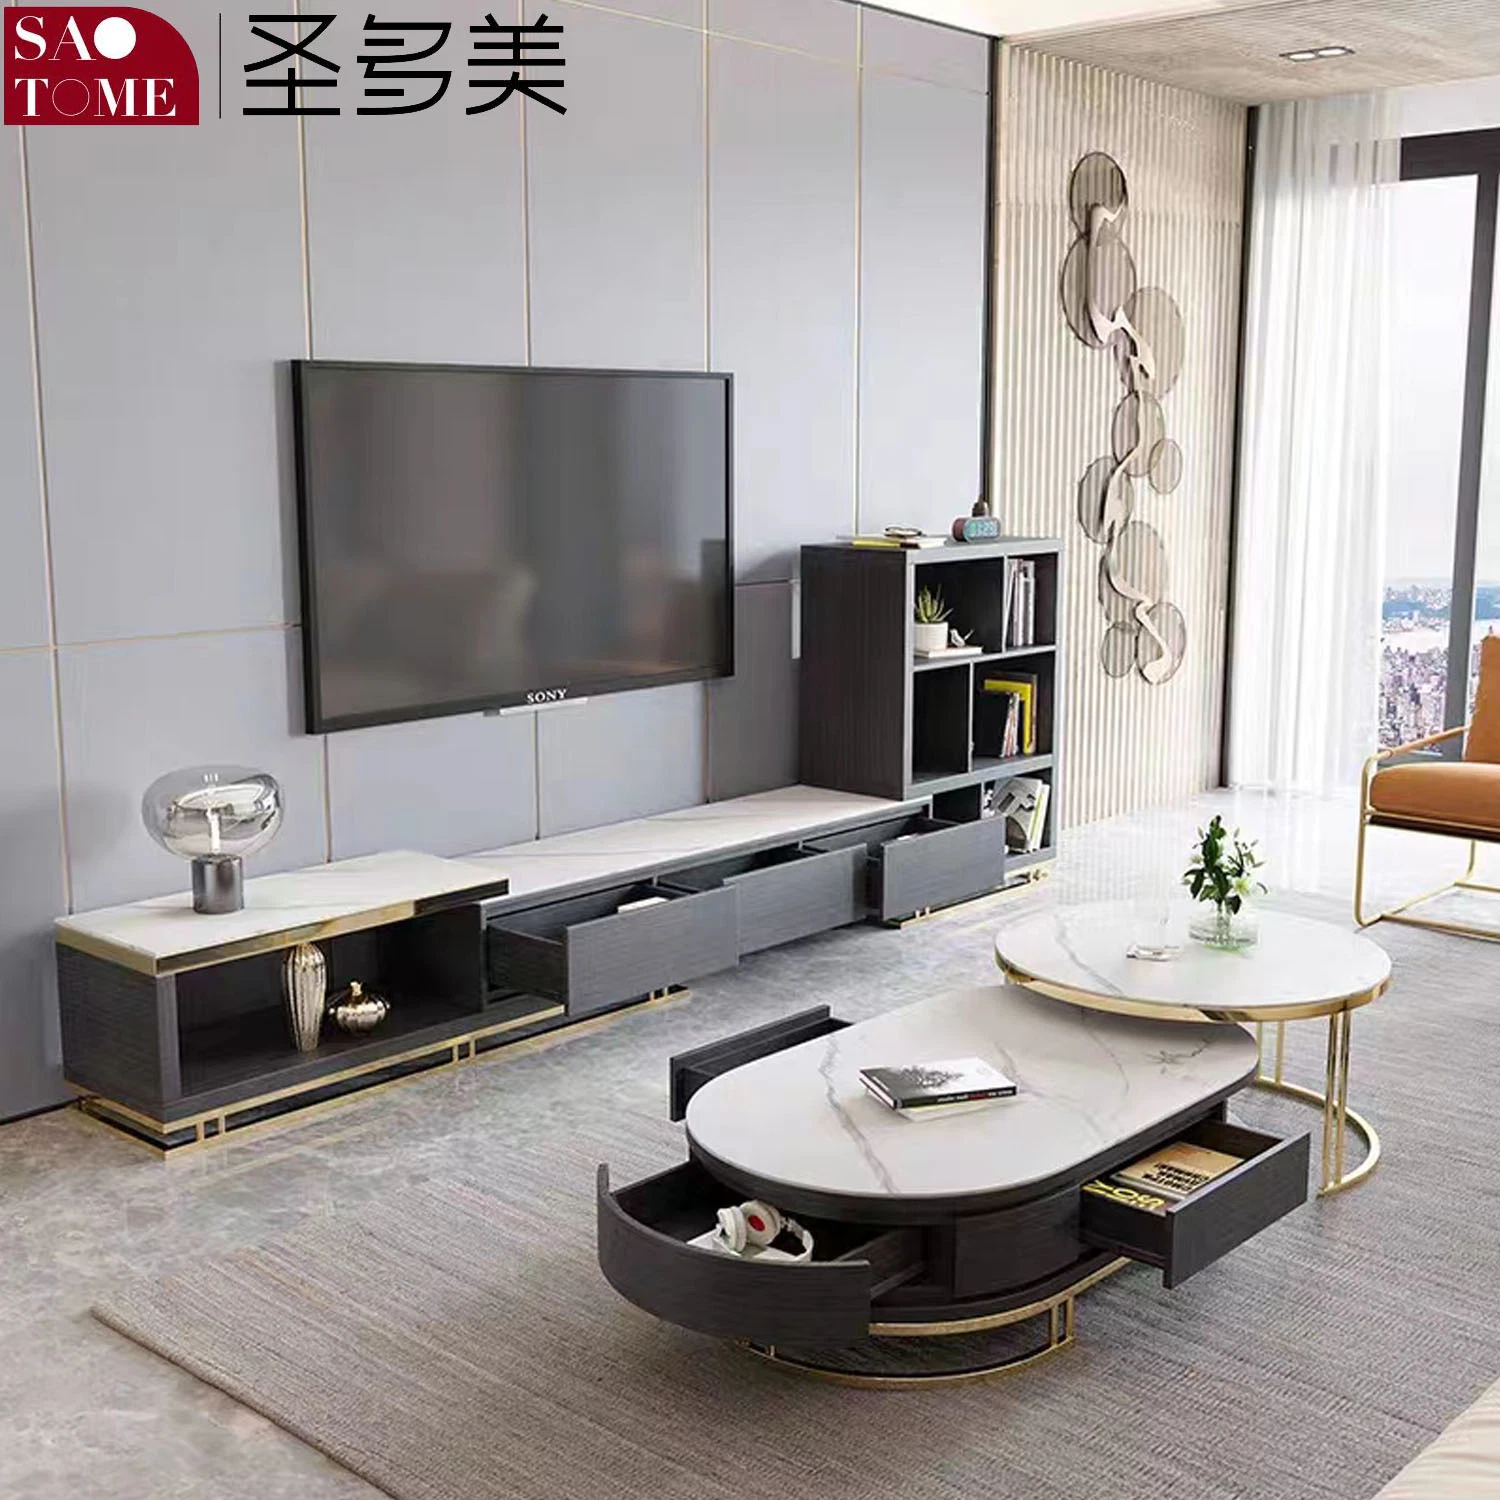 Table basse en plaque de roche moderne, meuble TV, buffet, combinaison de table basse ronde en fer, mobilier de salon.